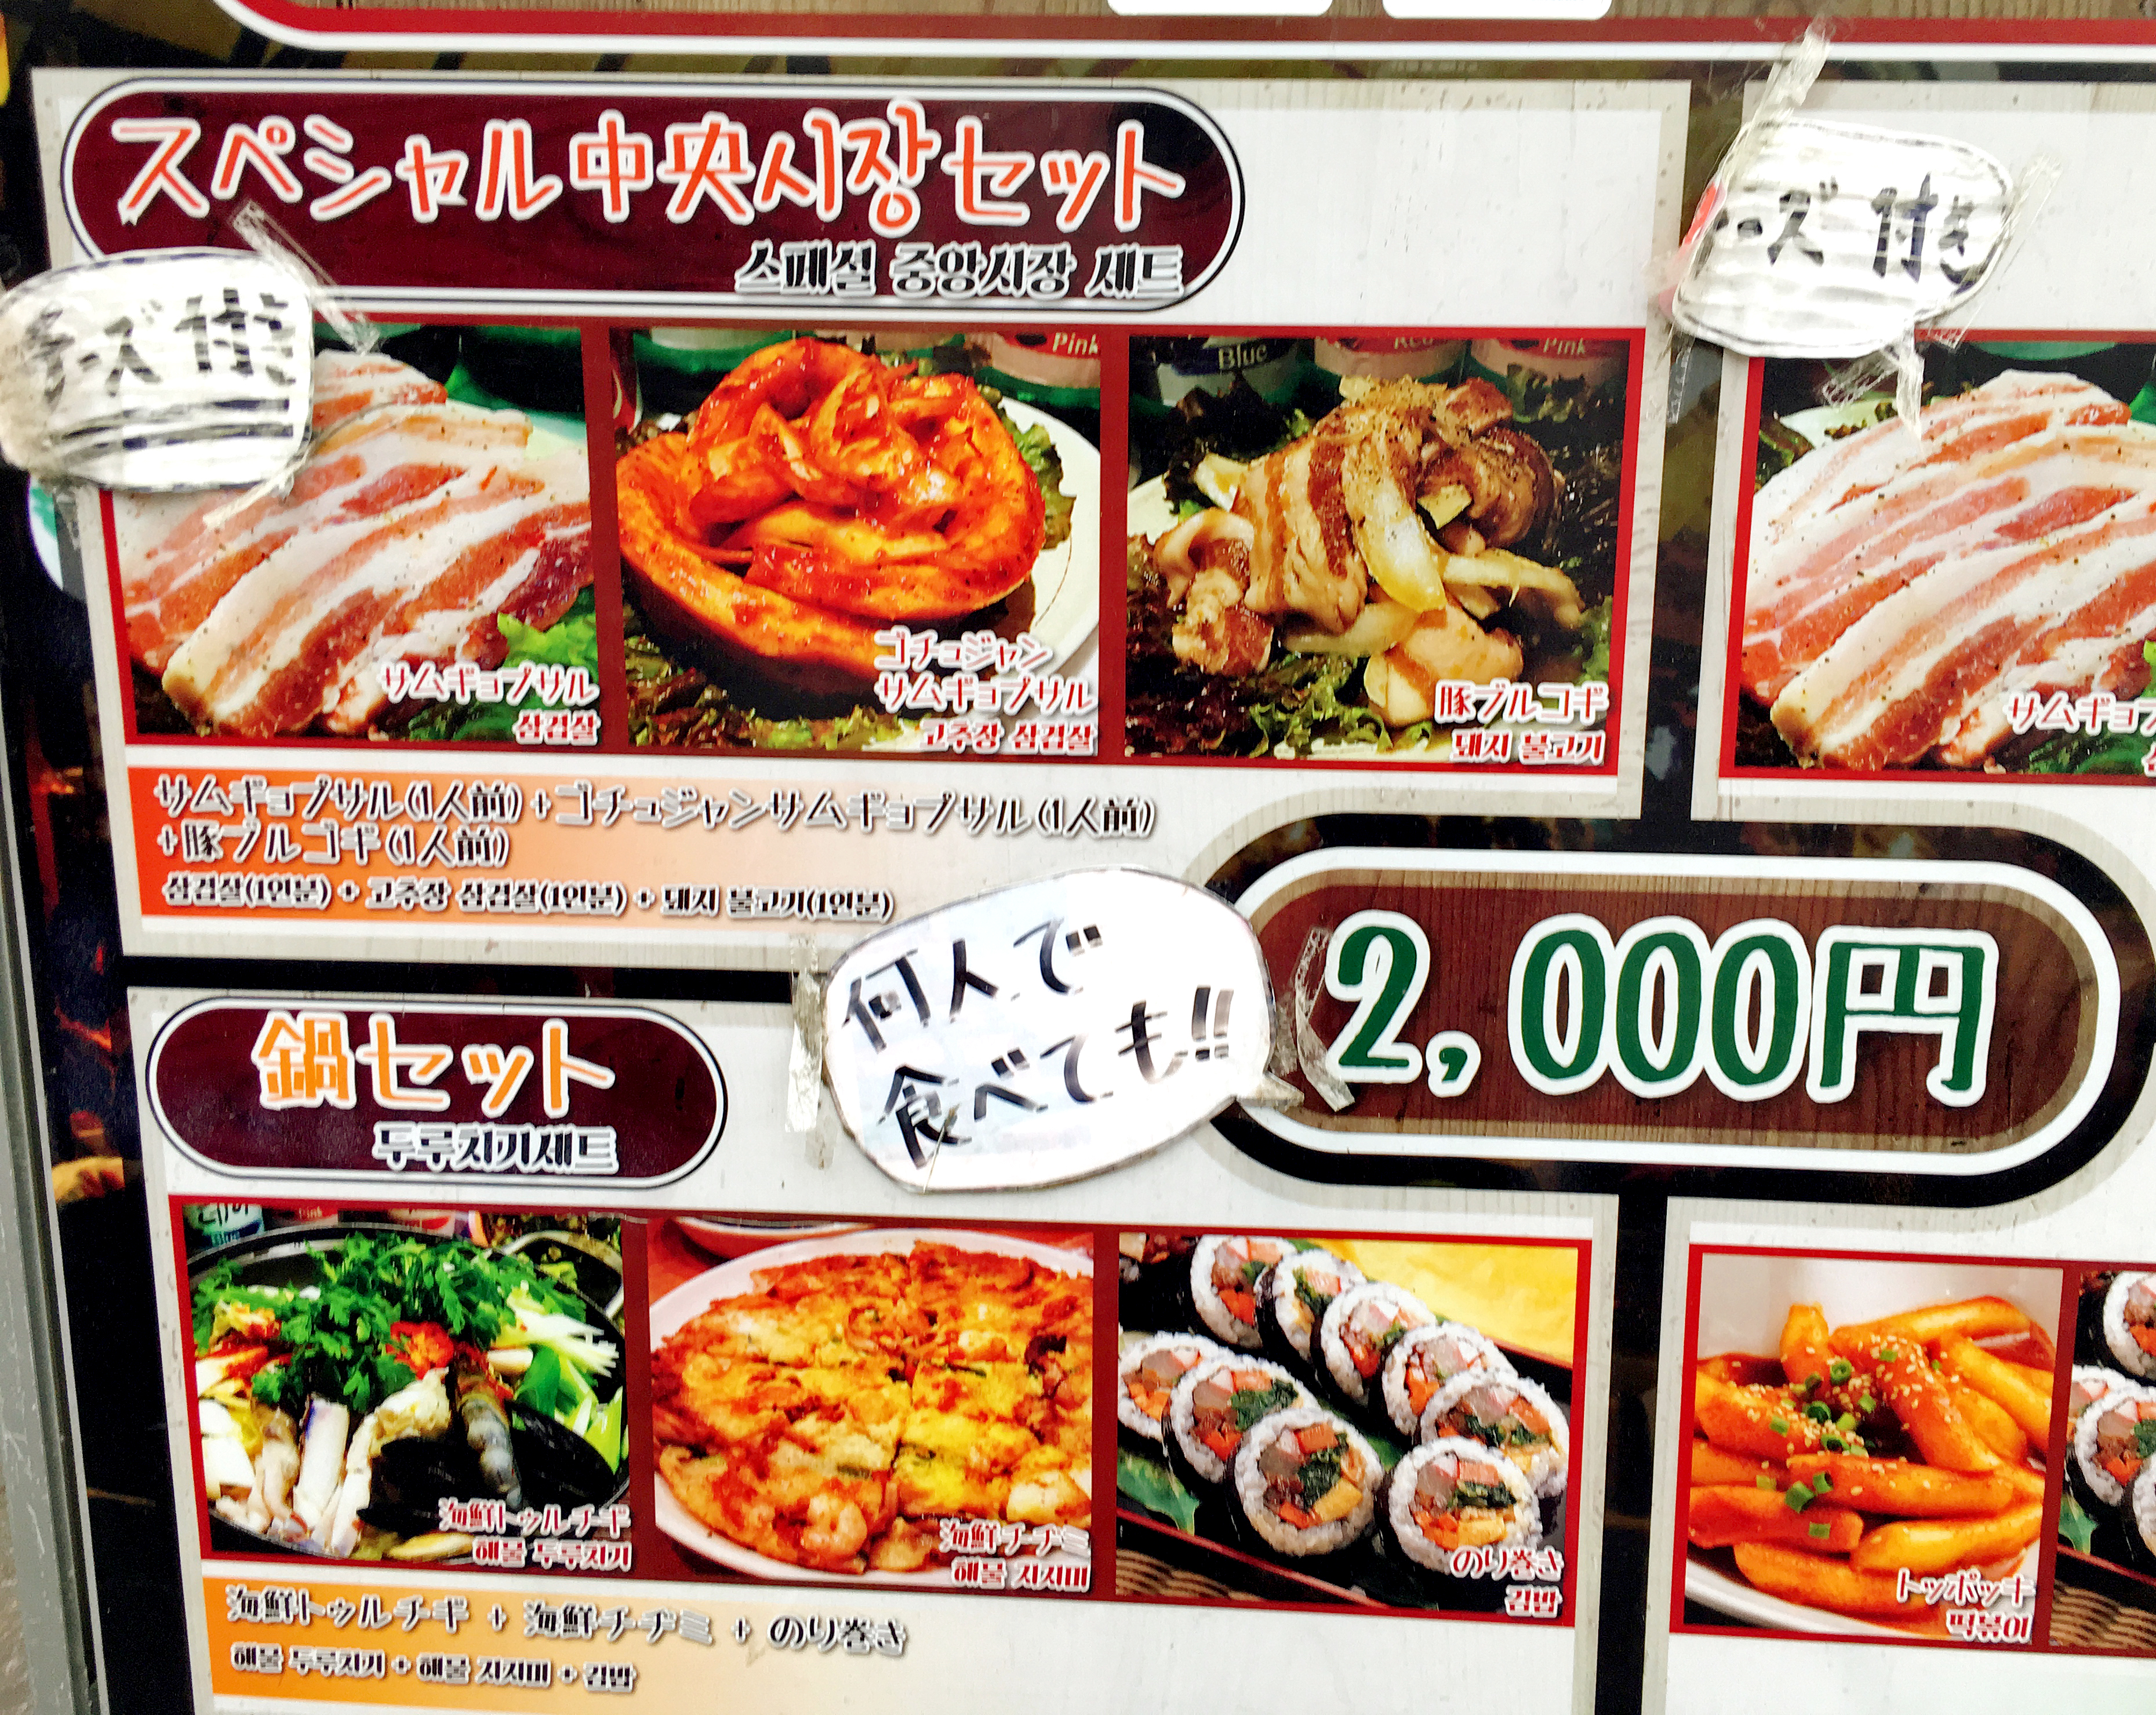 東京 新大久保で1人焼肉できない それなら 中央市場 に行け 何人で食べても00円メニューがあるから ロケットニュース24